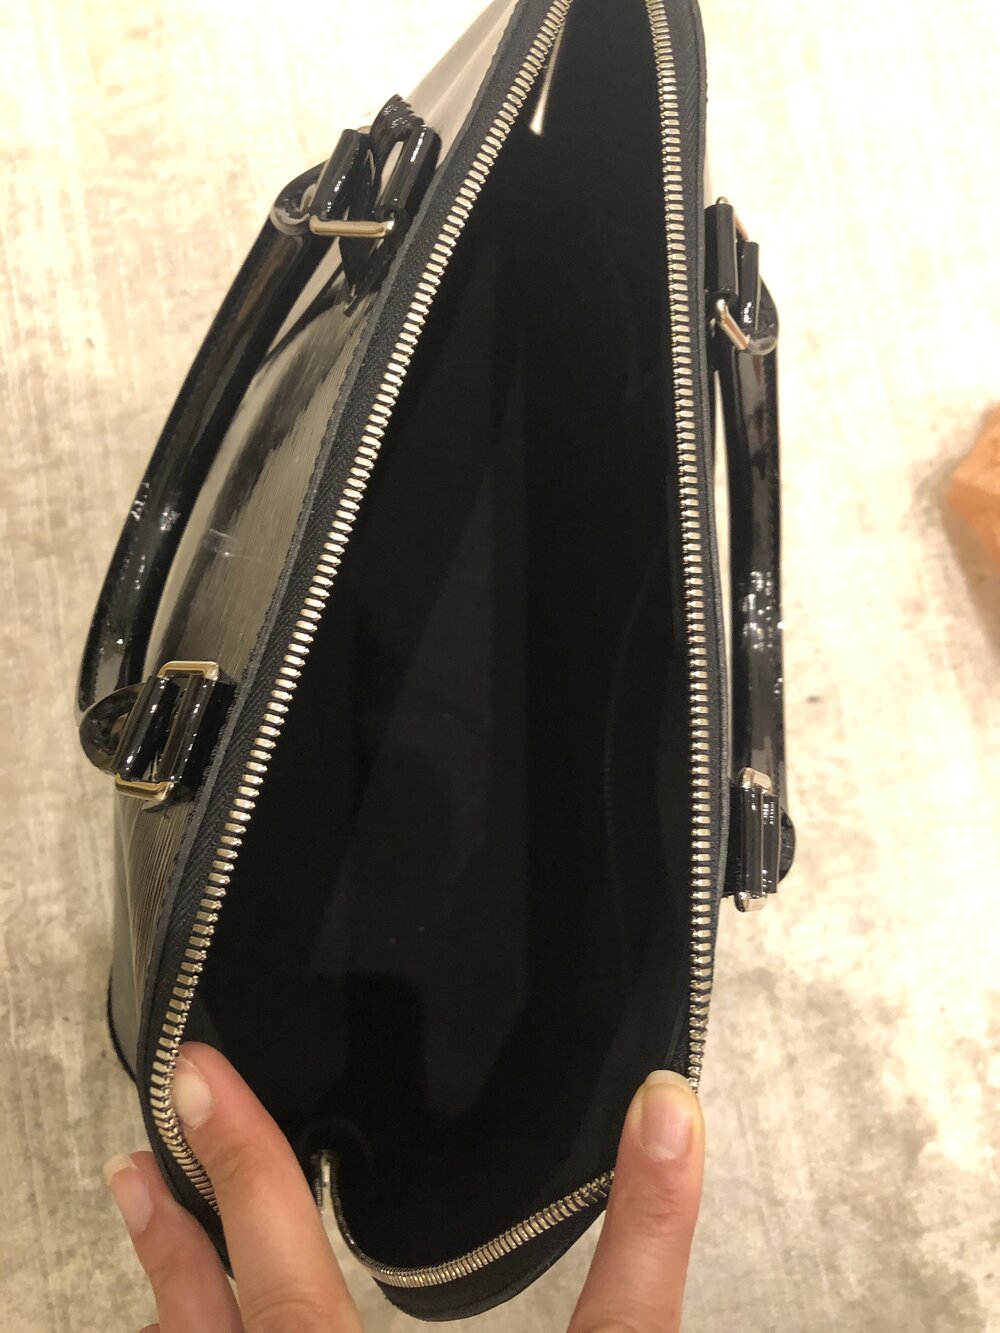 Louis Vuitton Alma GM Epi Patent Handbag